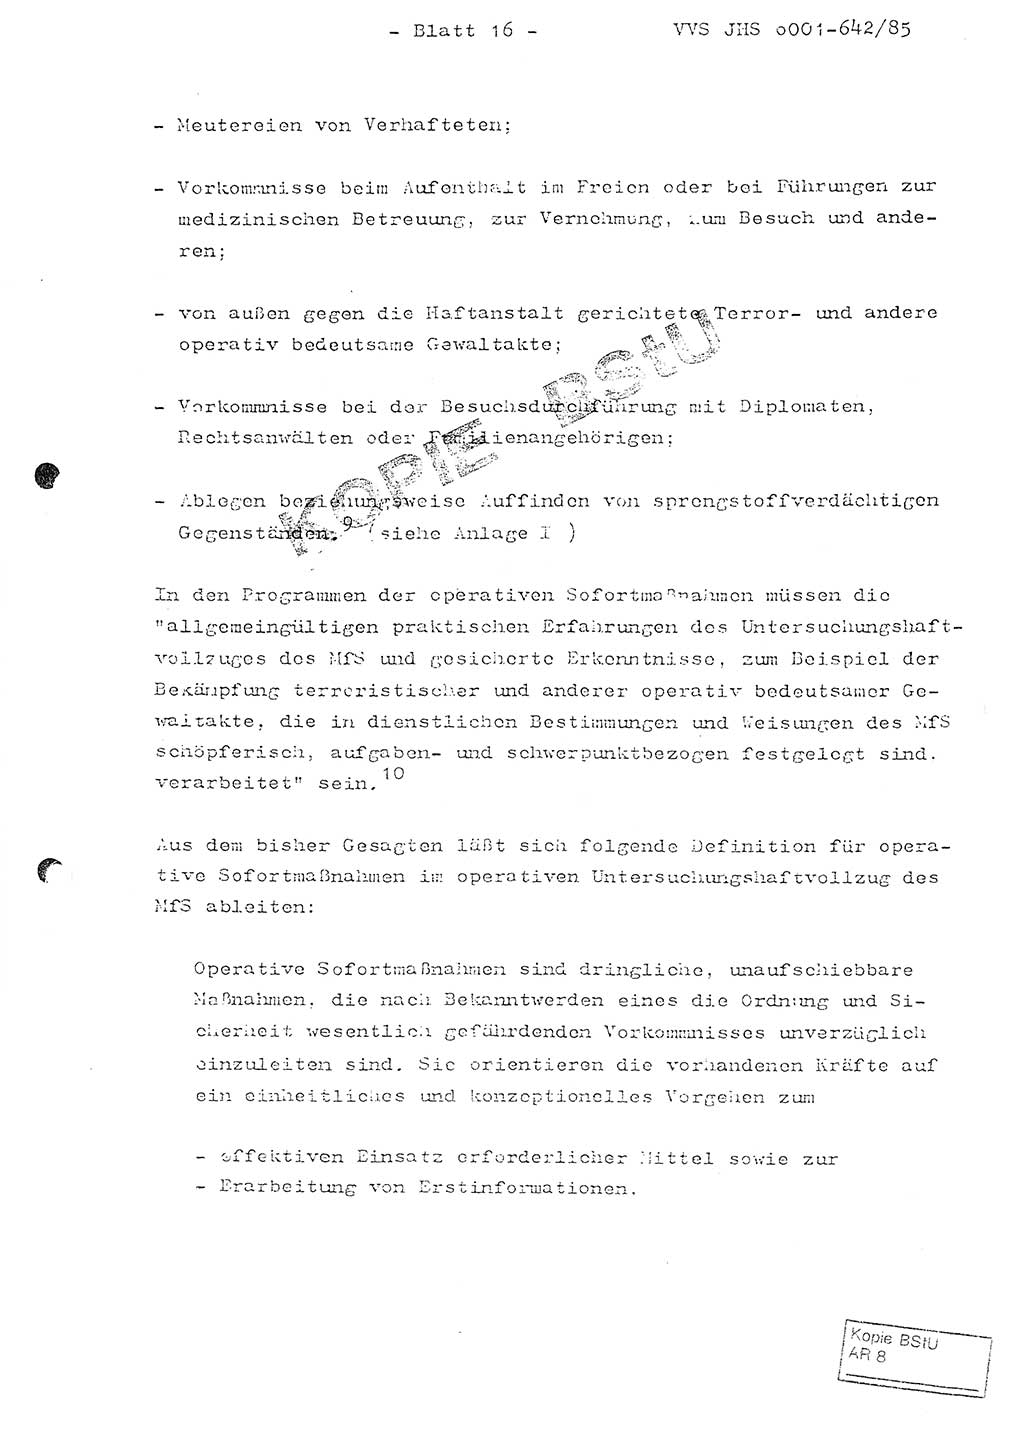 Fachschulabschlußarbeit Oberleutnant Lothar Fahland (Abt. ⅩⅣ), Ministerium für Staatssicherheit (MfS) [Deutsche Demokratische Republik (DDR)], Juristische Hochschule (JHS), Vertrauliche Verschlußsache (VVS) o001-642/85, Potsdam 1985, Blatt 16 (FS-Abschl.-Arb. MfS DDR JHS VVS o001-642/85 1985, Bl. 16)